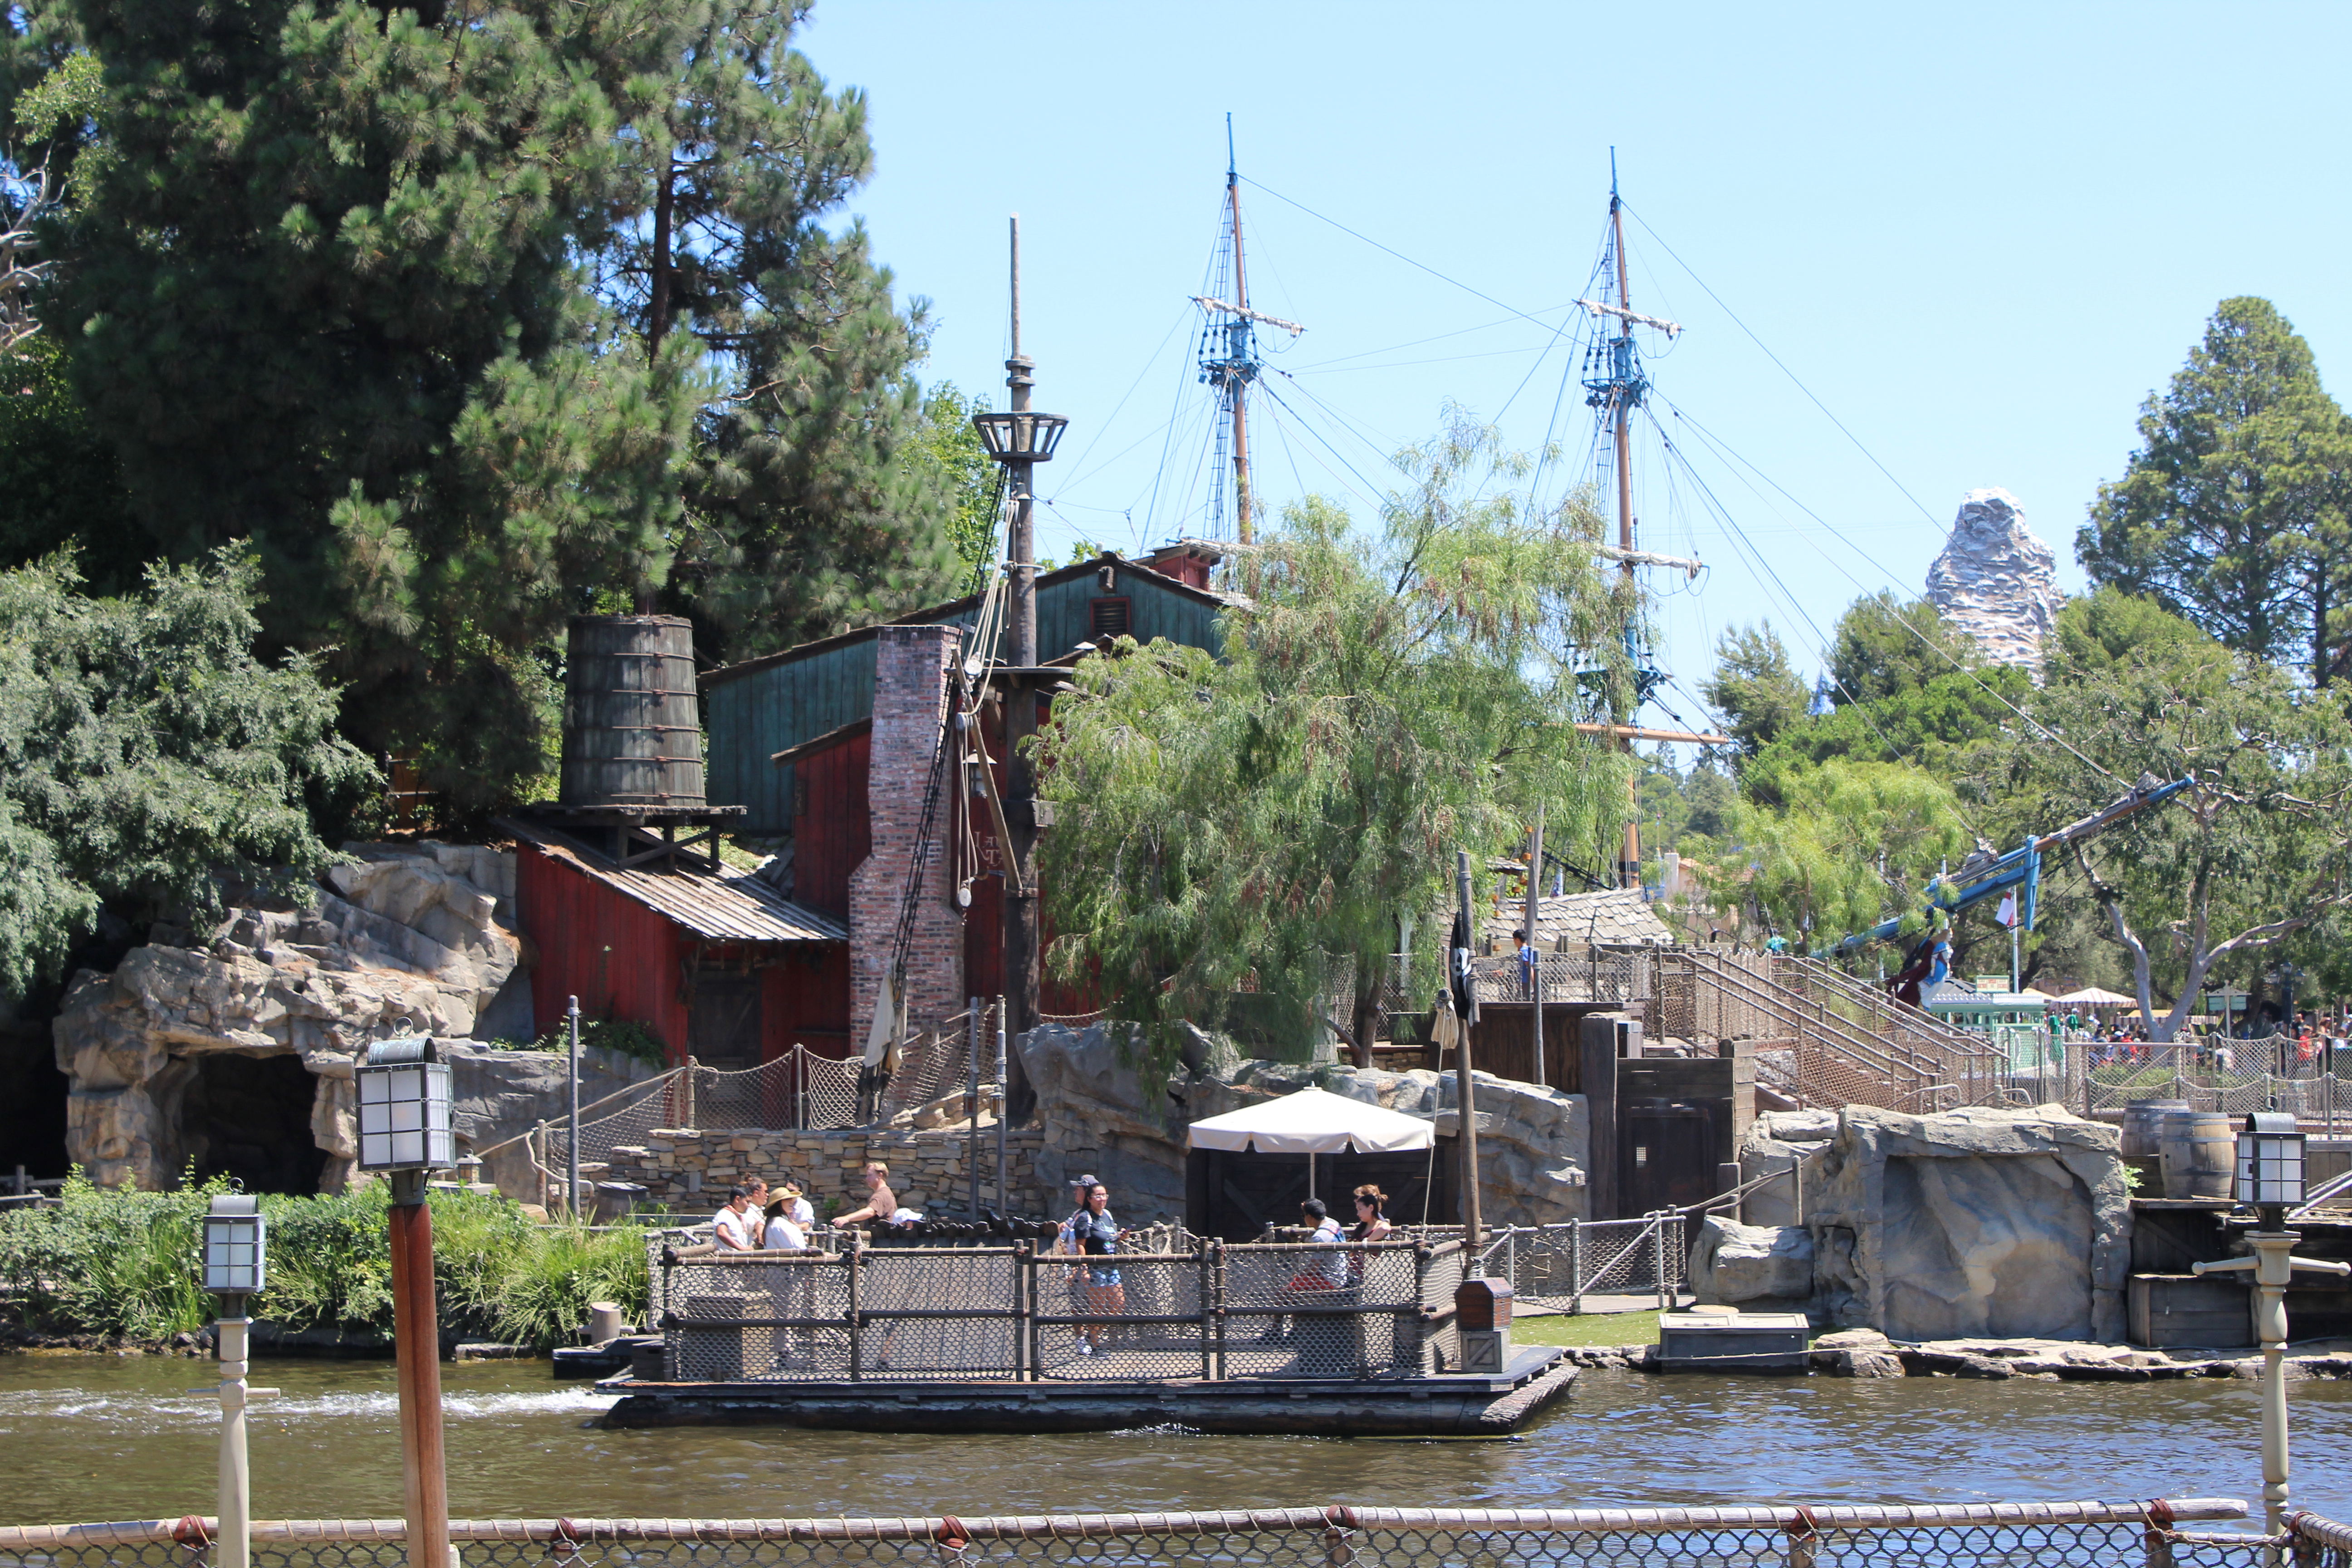 Tom Sawyer Island, Disneyland